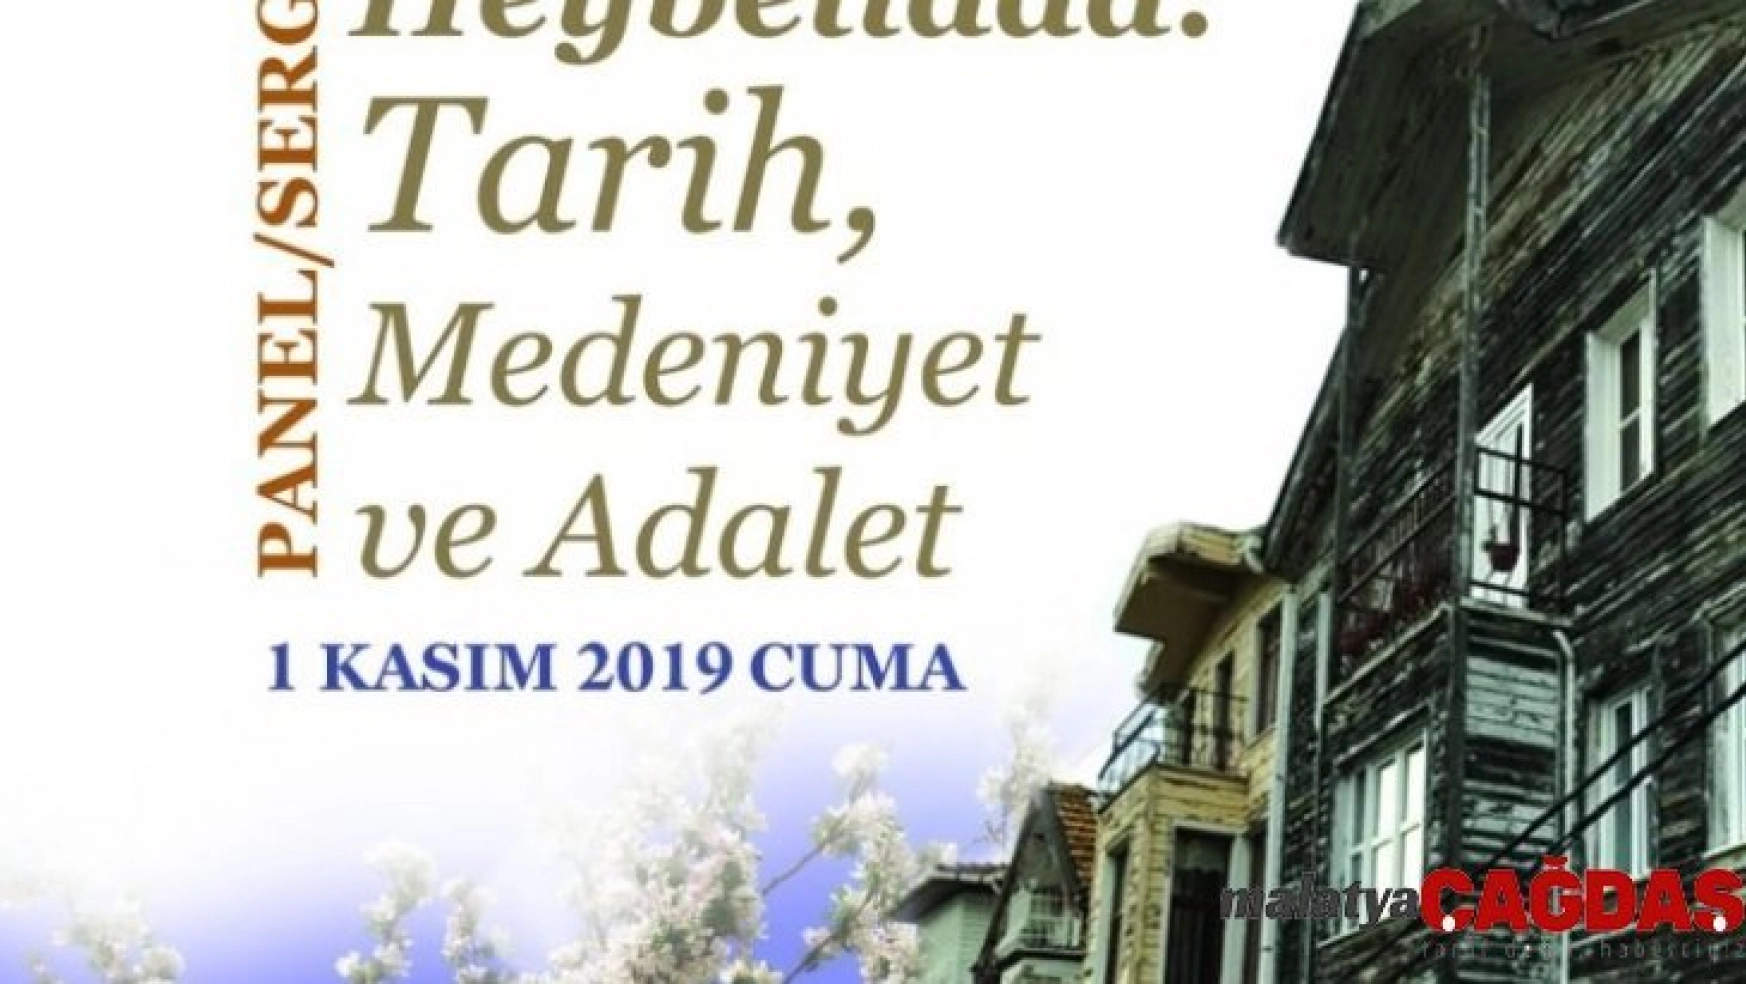 Türk Tarih Kurumundan 'Heybeliada: Tarih, Medeniyet ve Adalet Paneli'